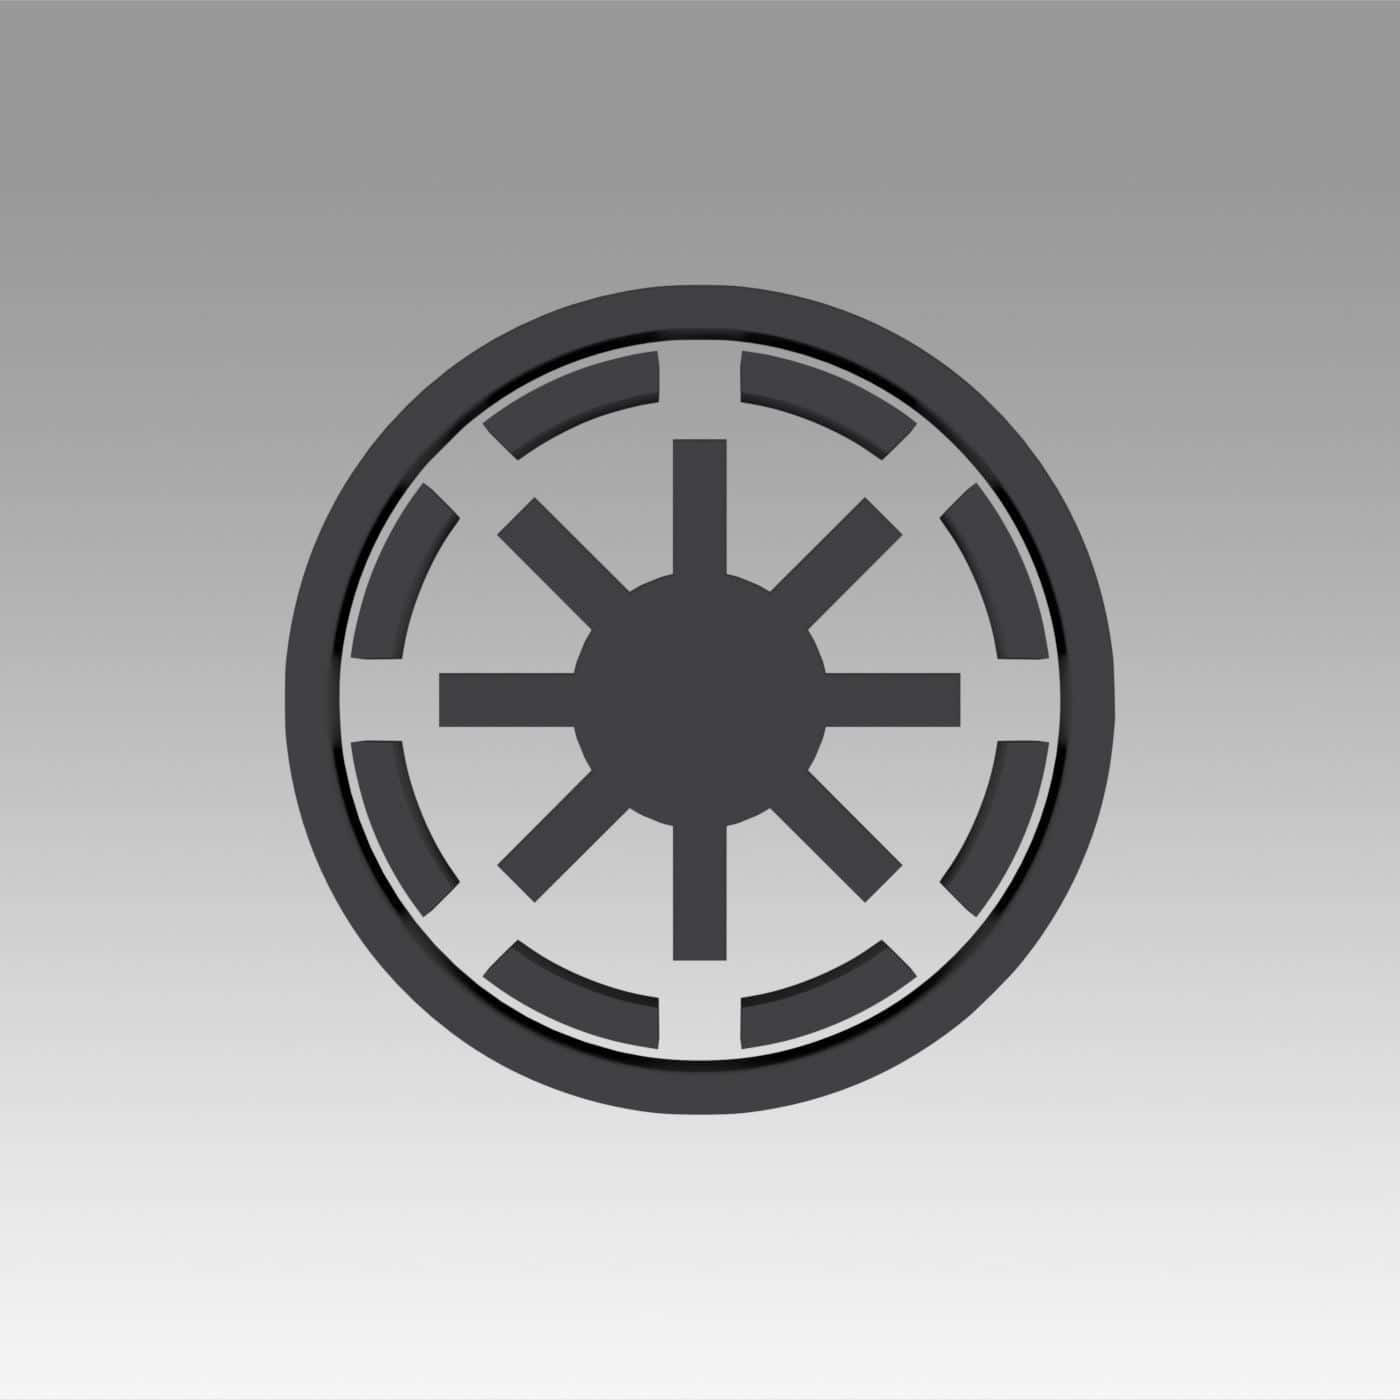 Ellogotipo Oficial Del Imperio Galáctico De La Franquicia De Star Wars. Fondo de pantalla